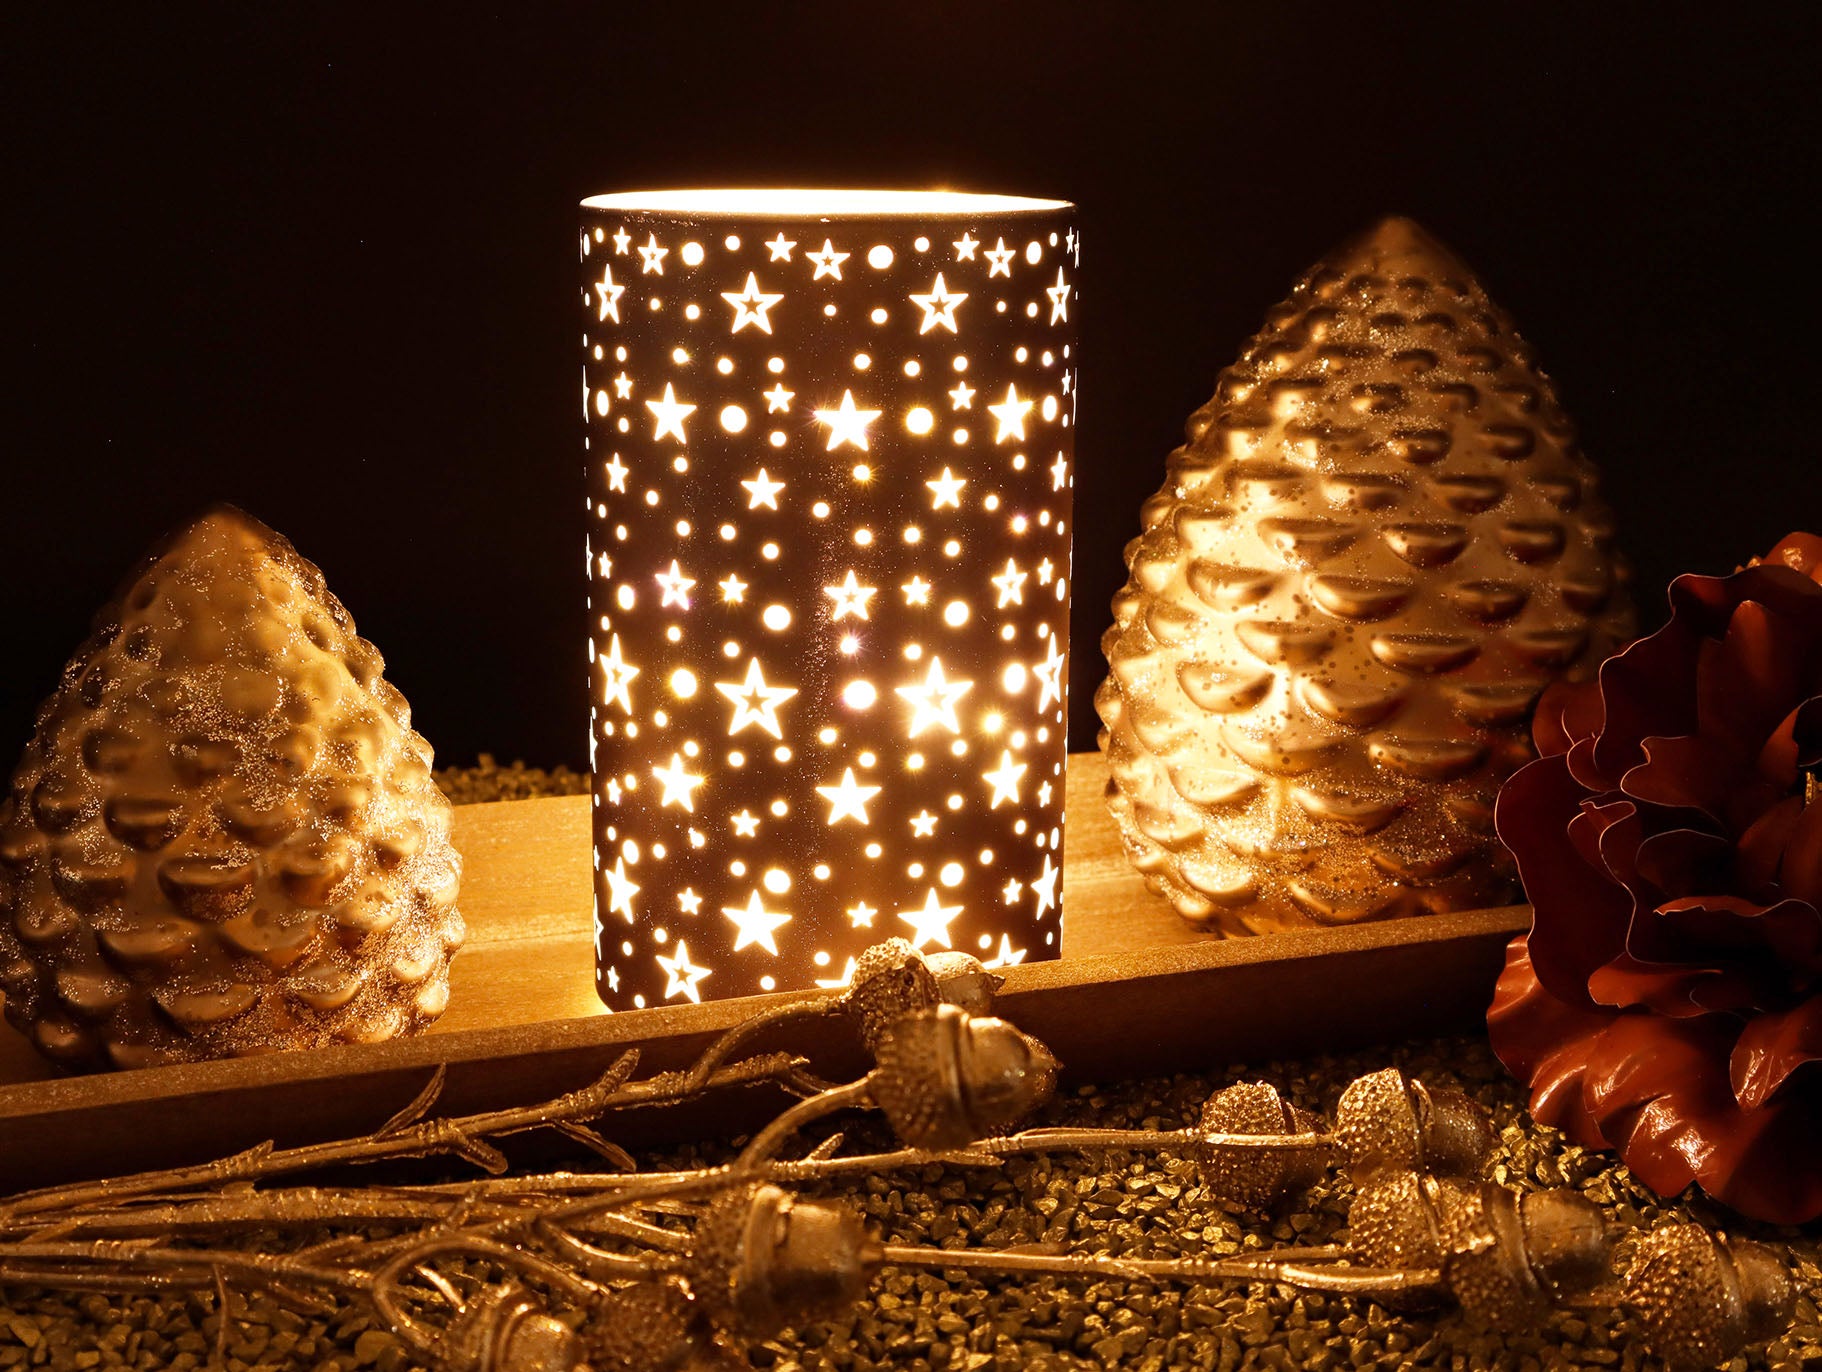 LED Windlicht mit Sternenmuster in ❤️ Dekoration mit Herz home your - ❤️ Anthrazit Style –